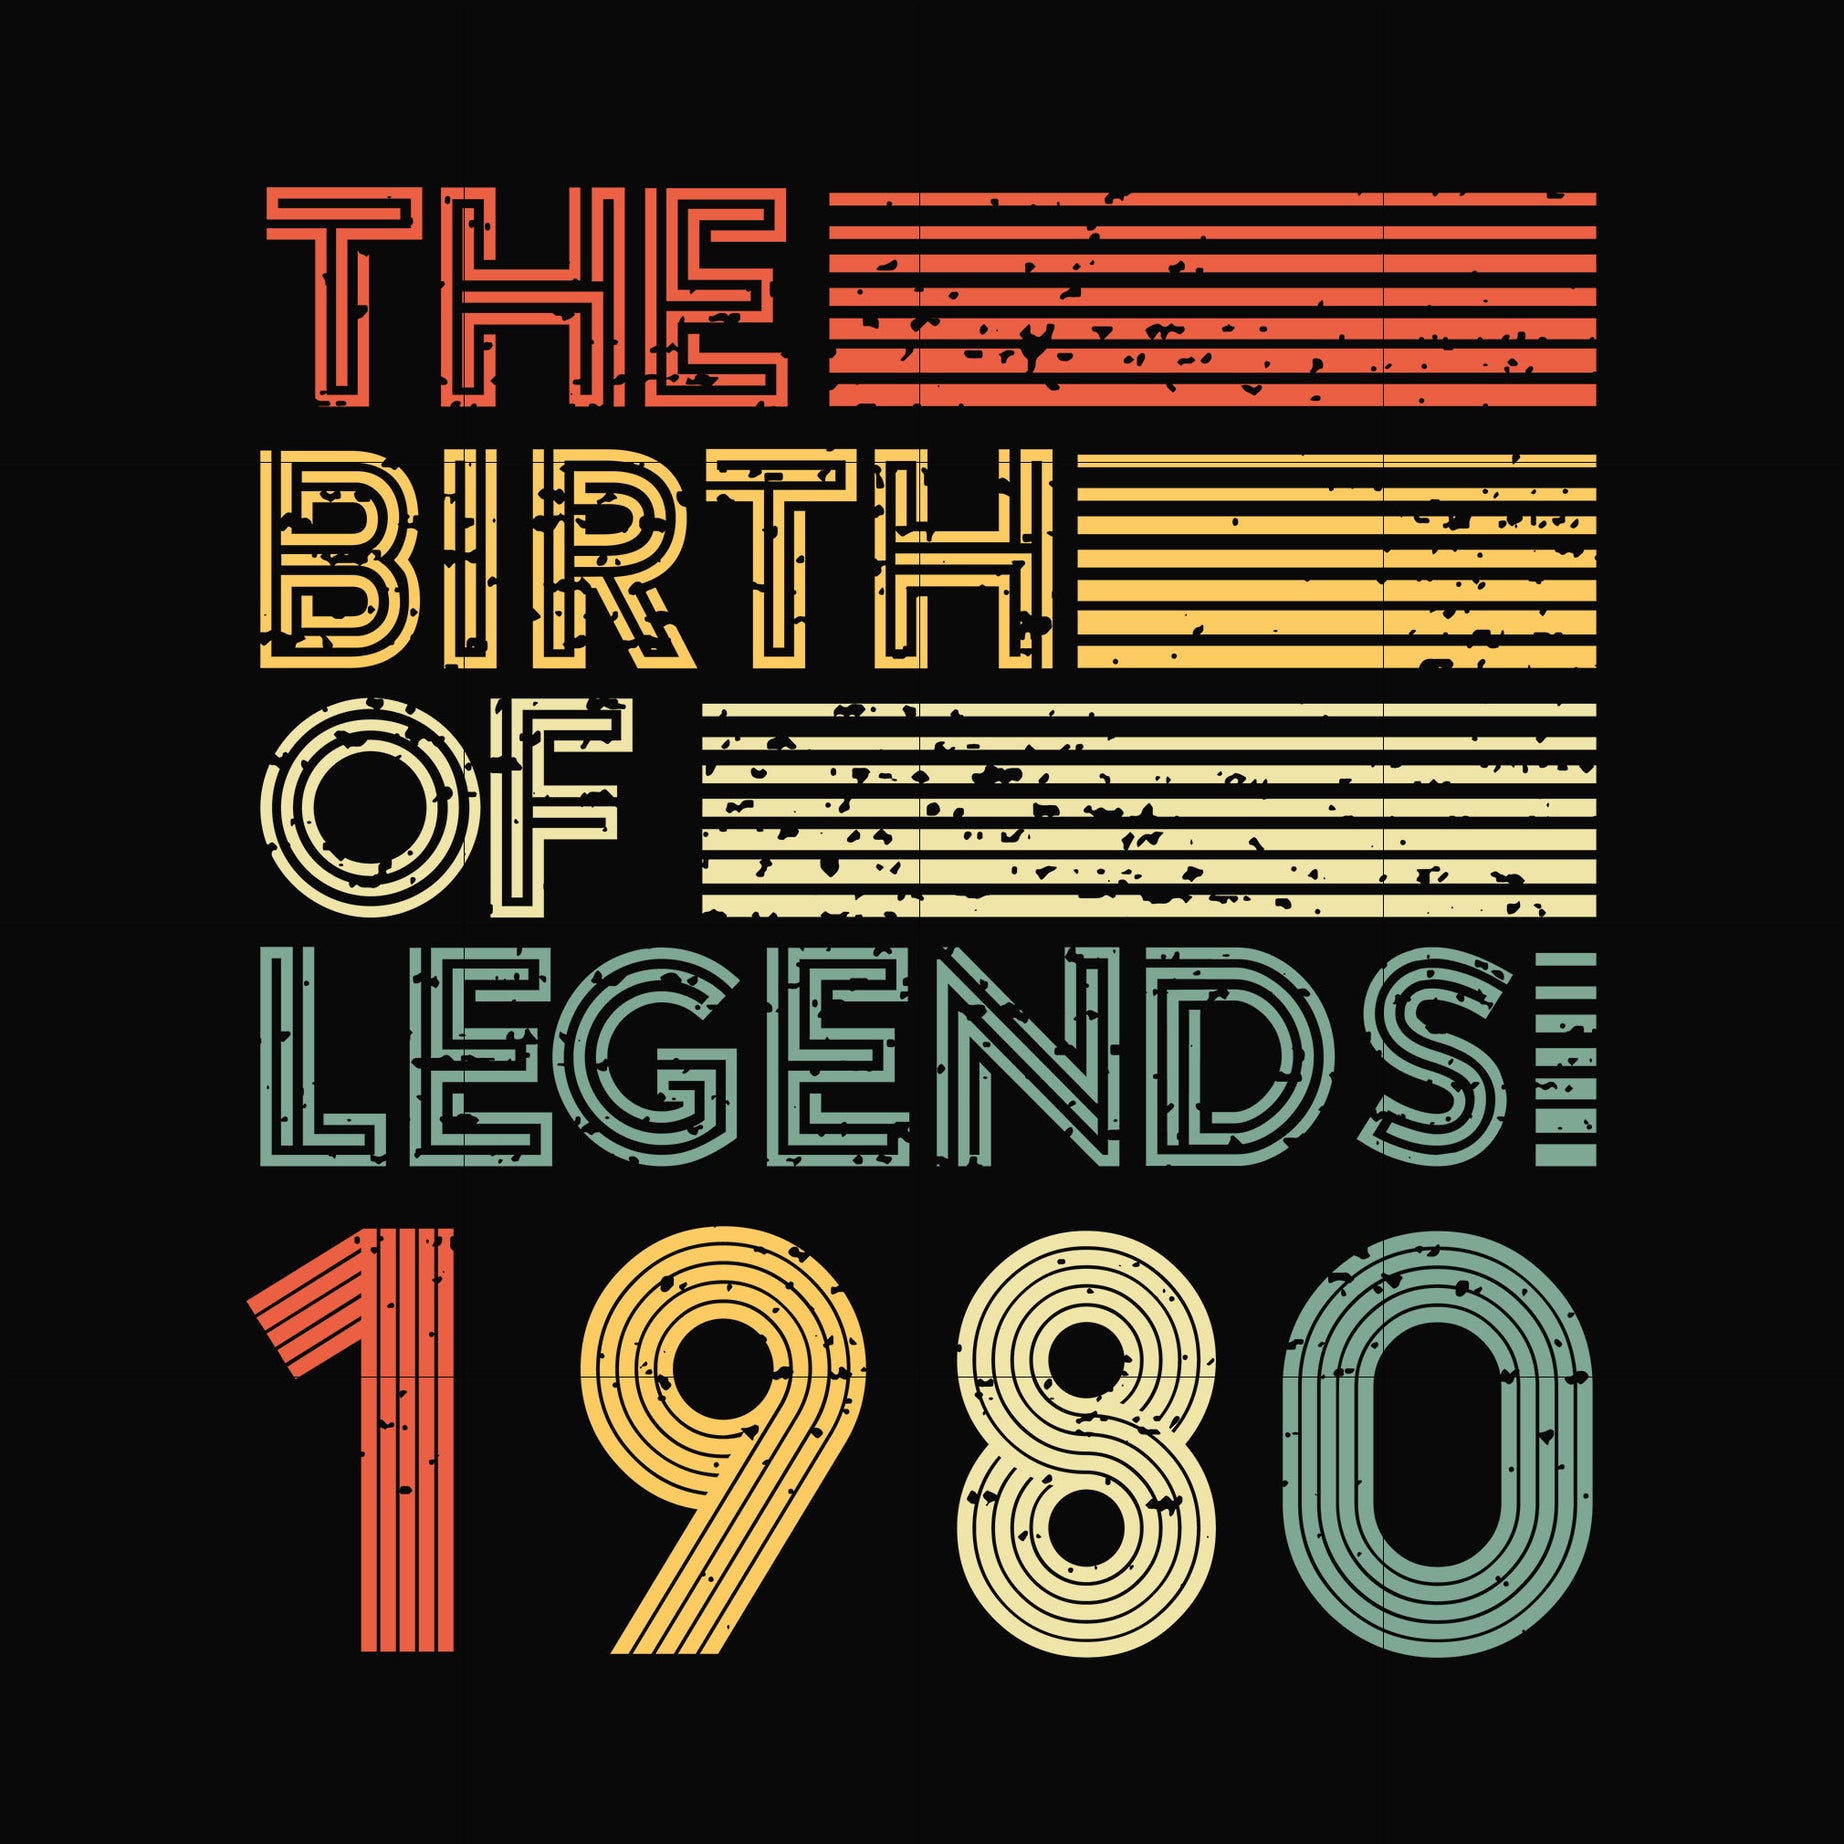 The birth of legends 1980 svg, png, dxf, eps digital file NBD0082